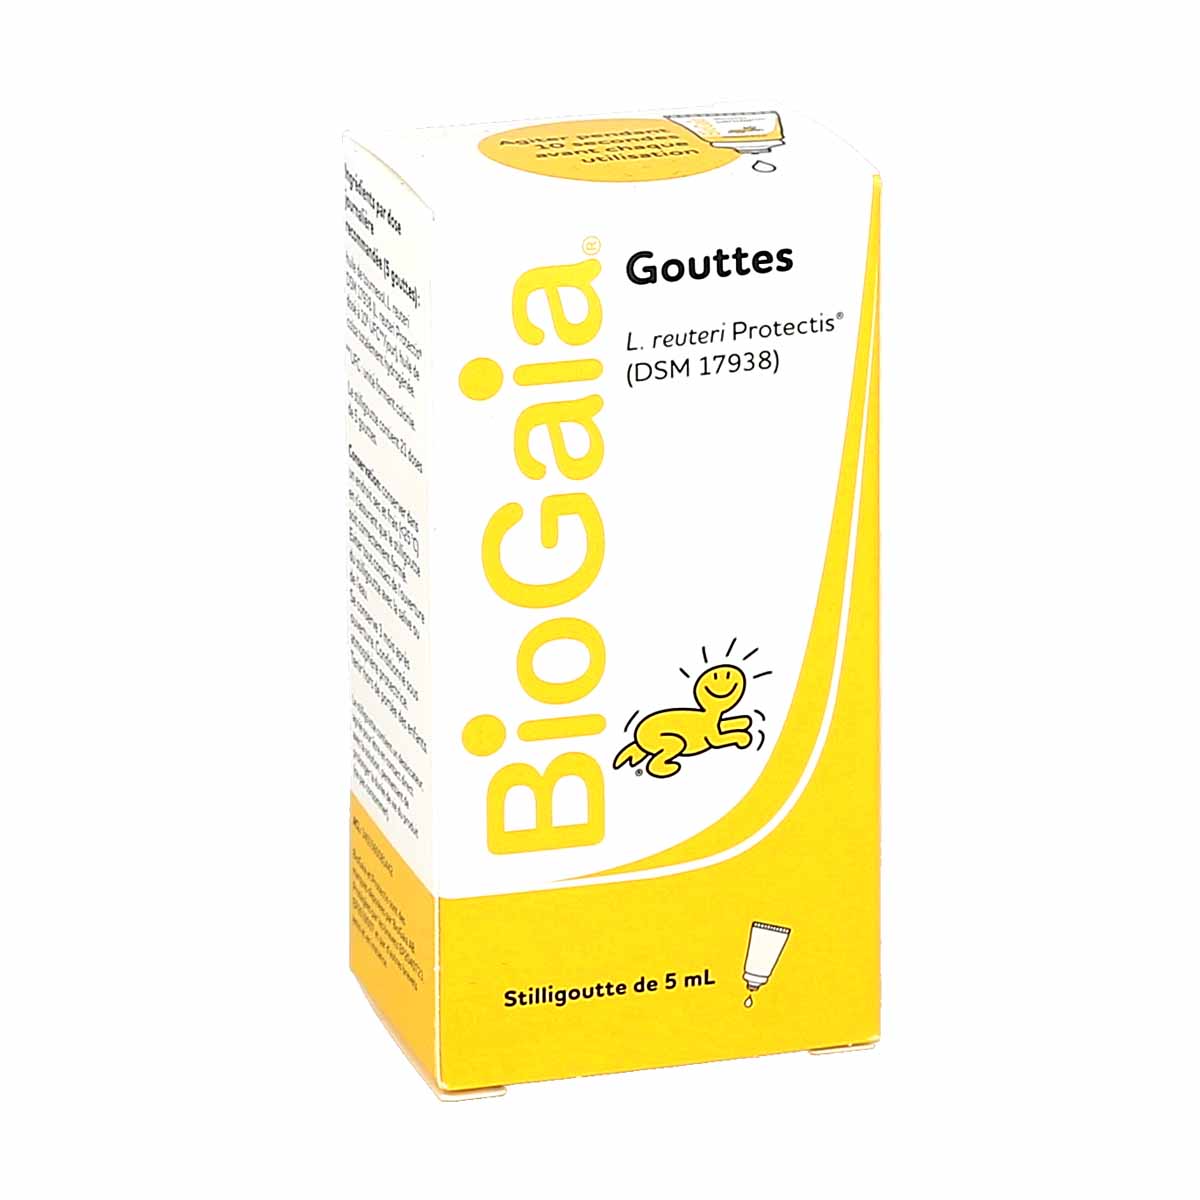 BioGaia Gouttes 5 ml - Redcare Pharmacie